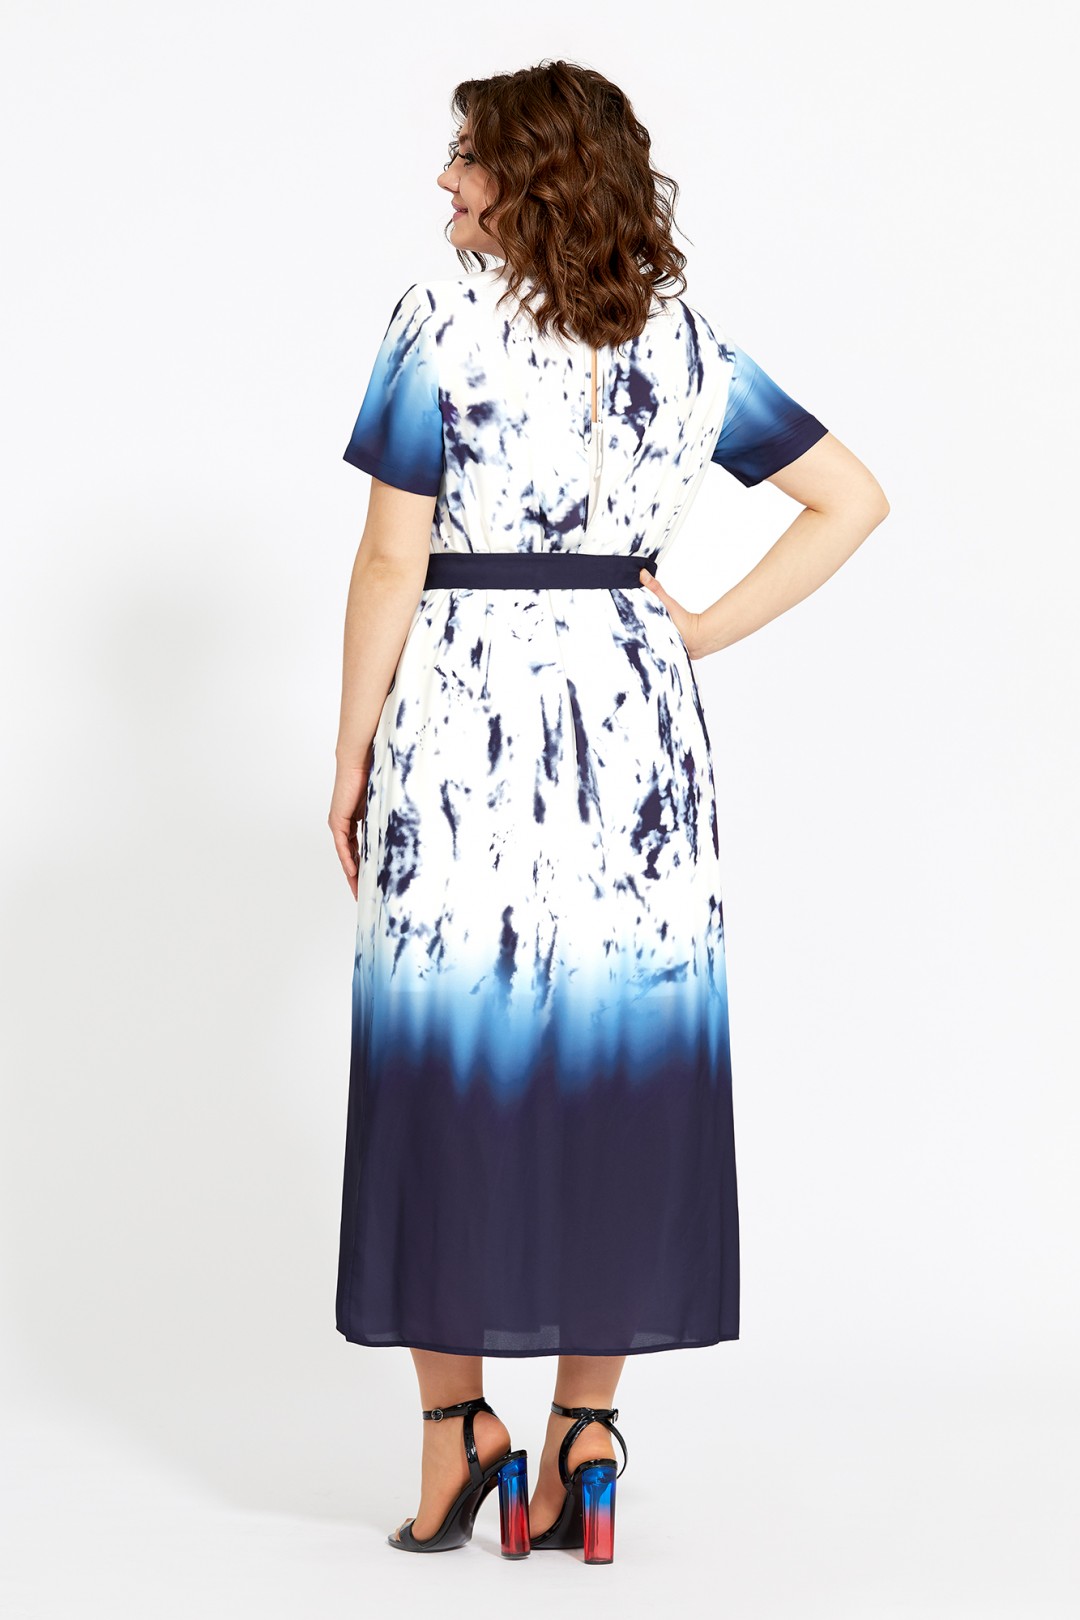 Платье Мублиз 532 синий+ белый